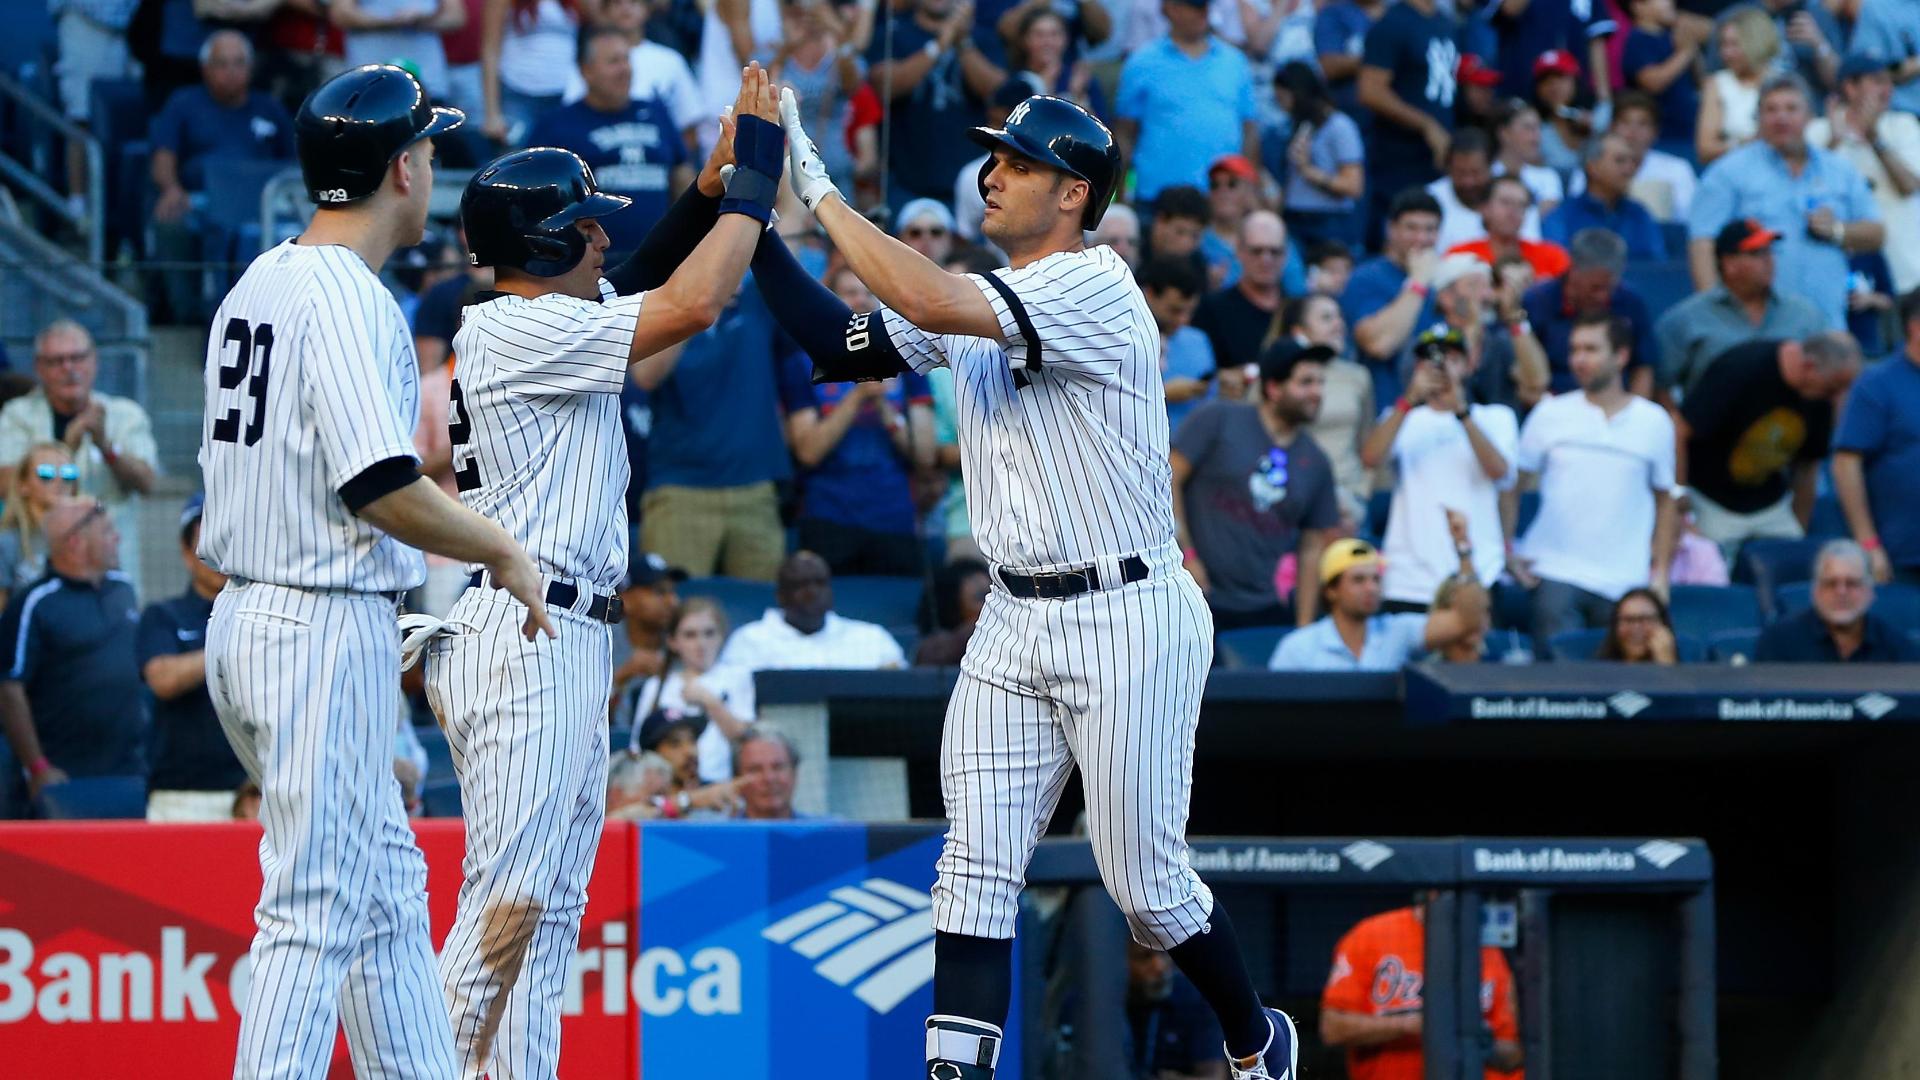 Yankees' losing streak hits nine, longest since 1982 - ESPN